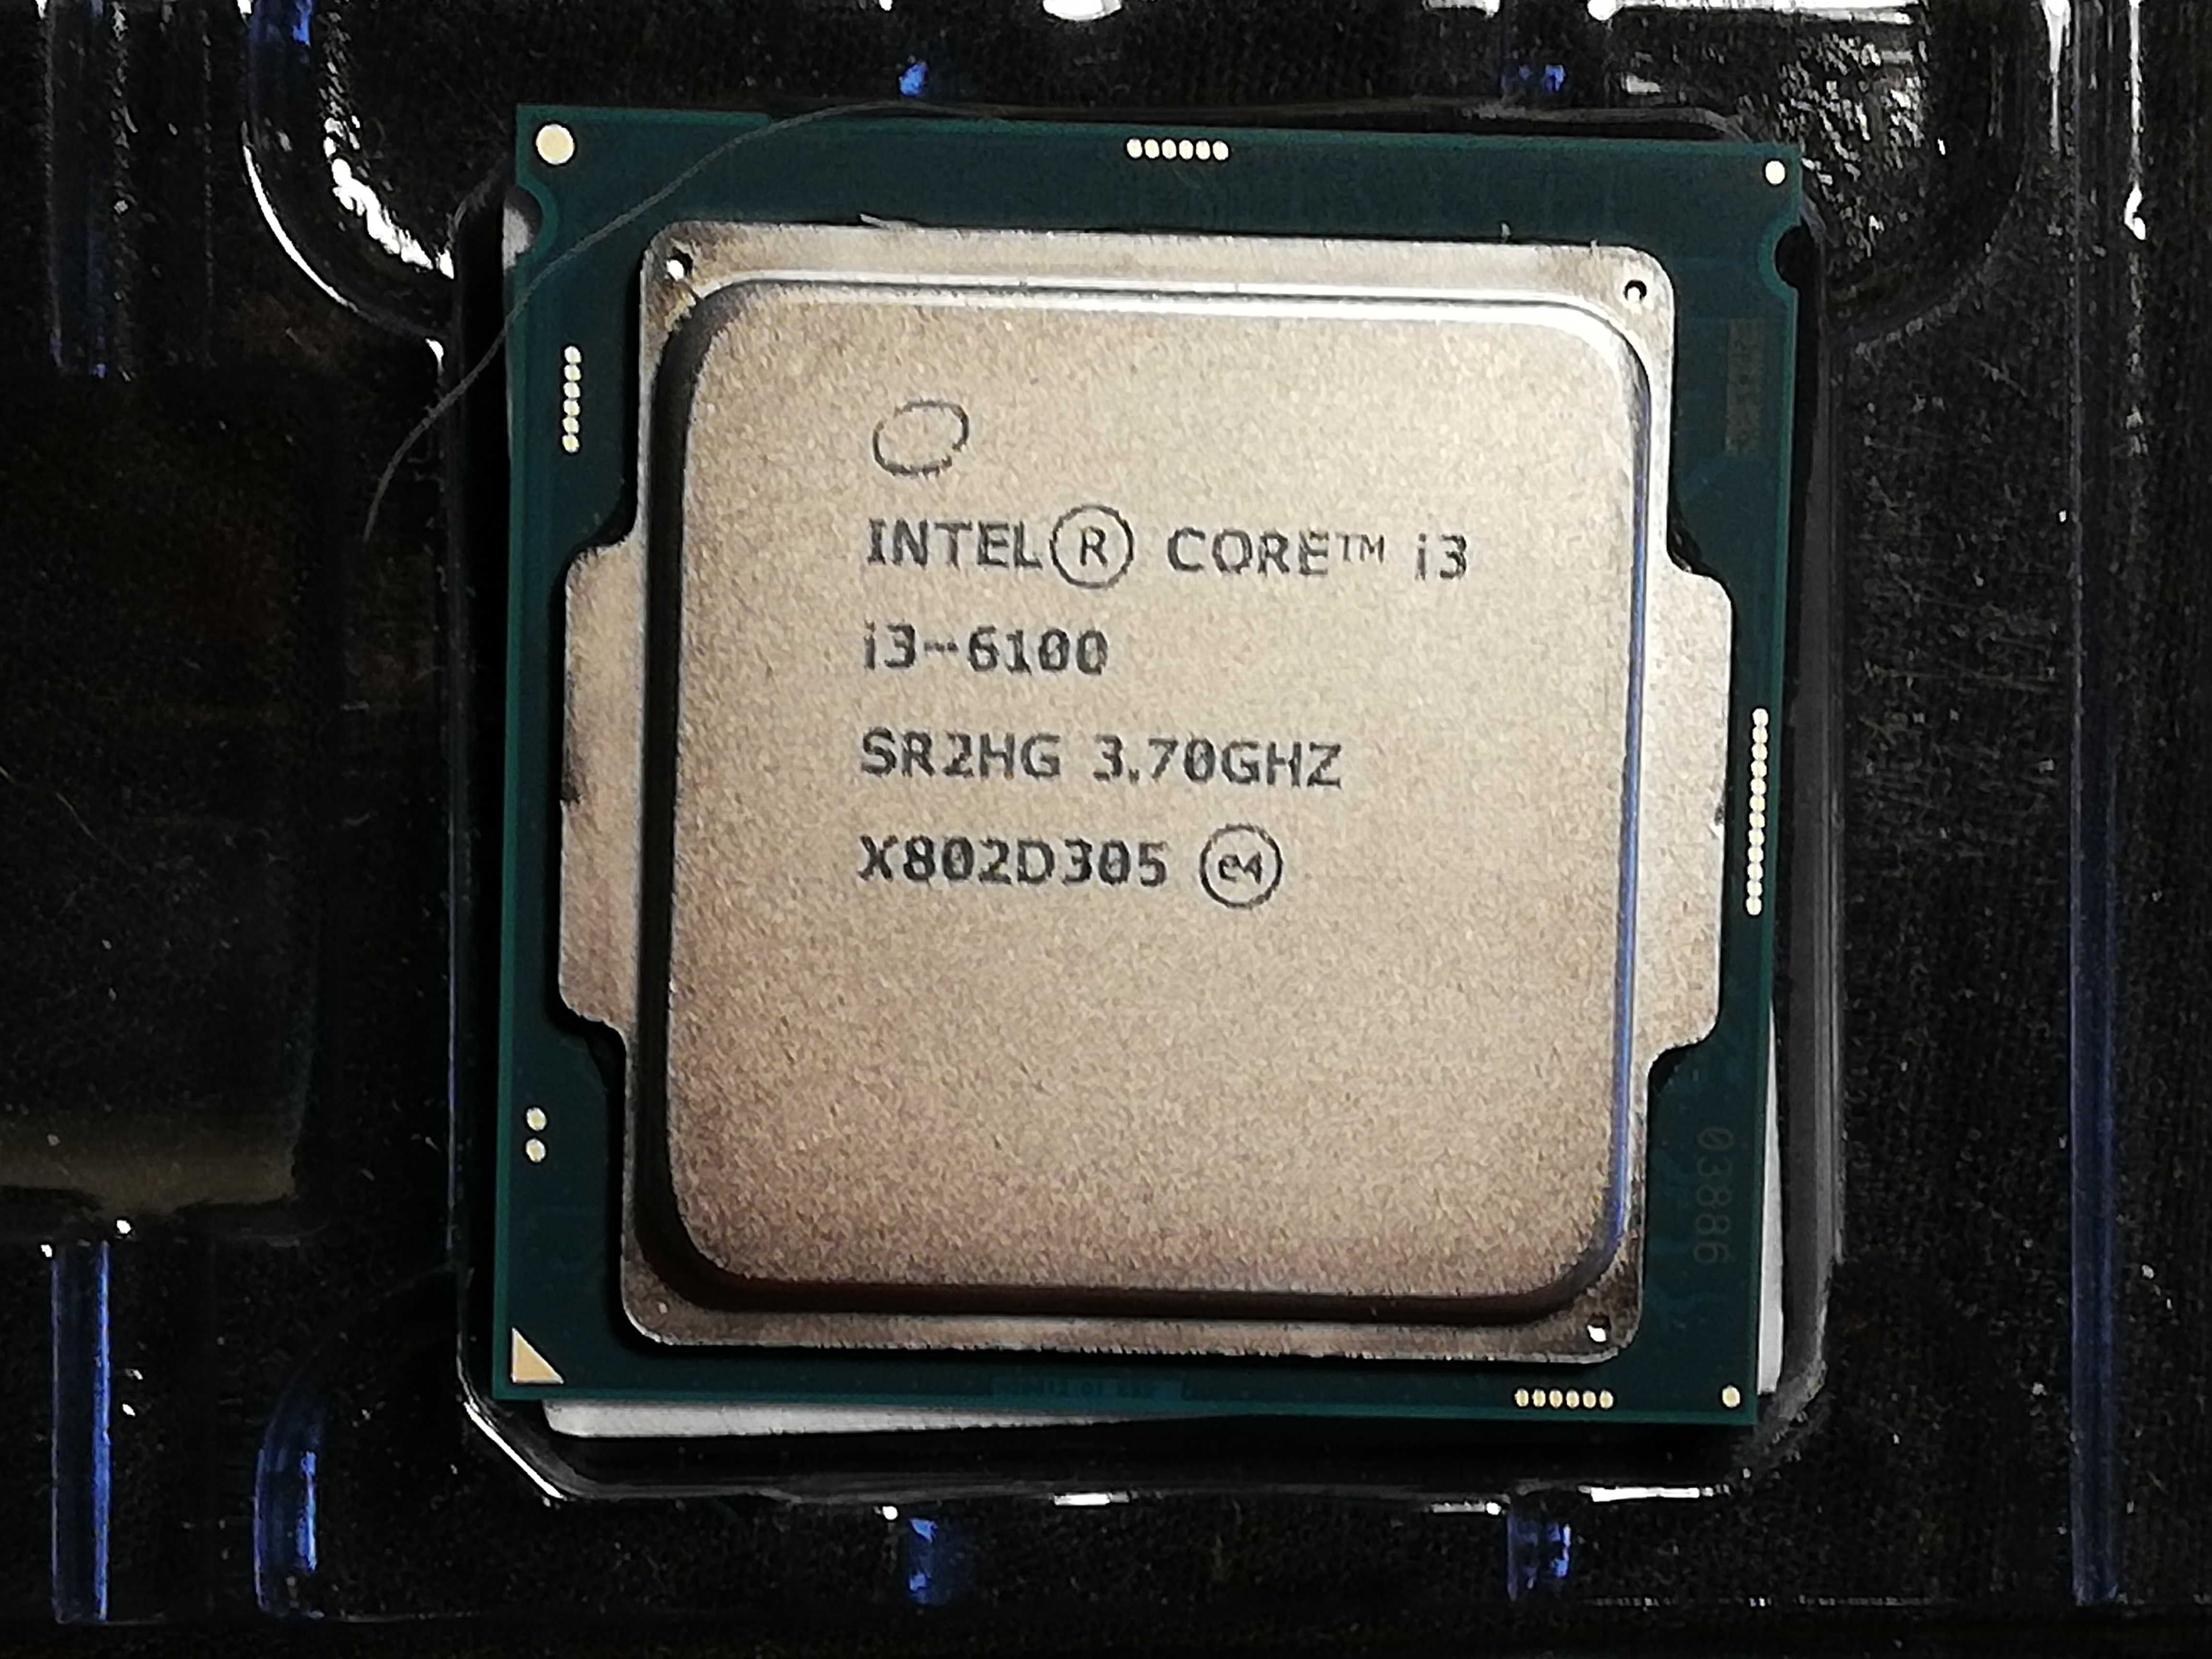 Procesor Intel Core i3 sprzedam